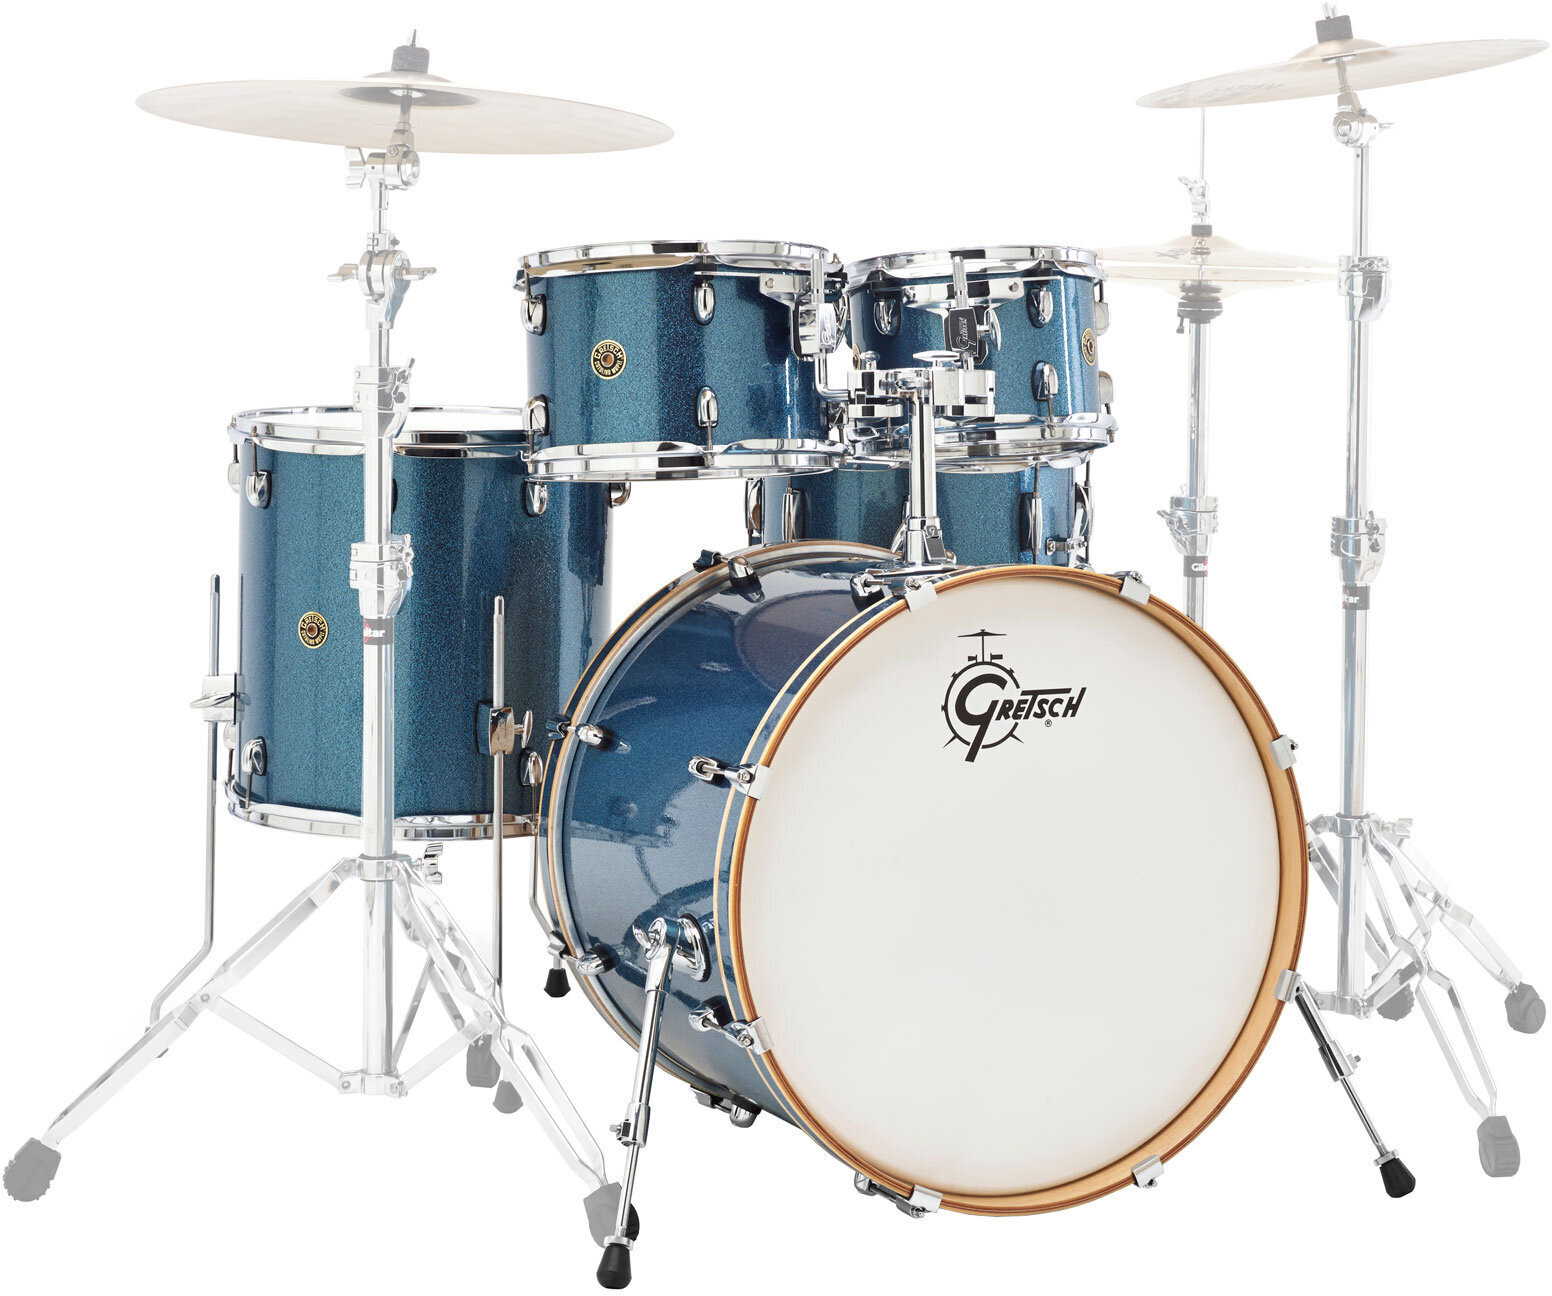 Akustik-Drumset Gretsch Drums CM1-E825 Catalina Maple Aqua Sparkle